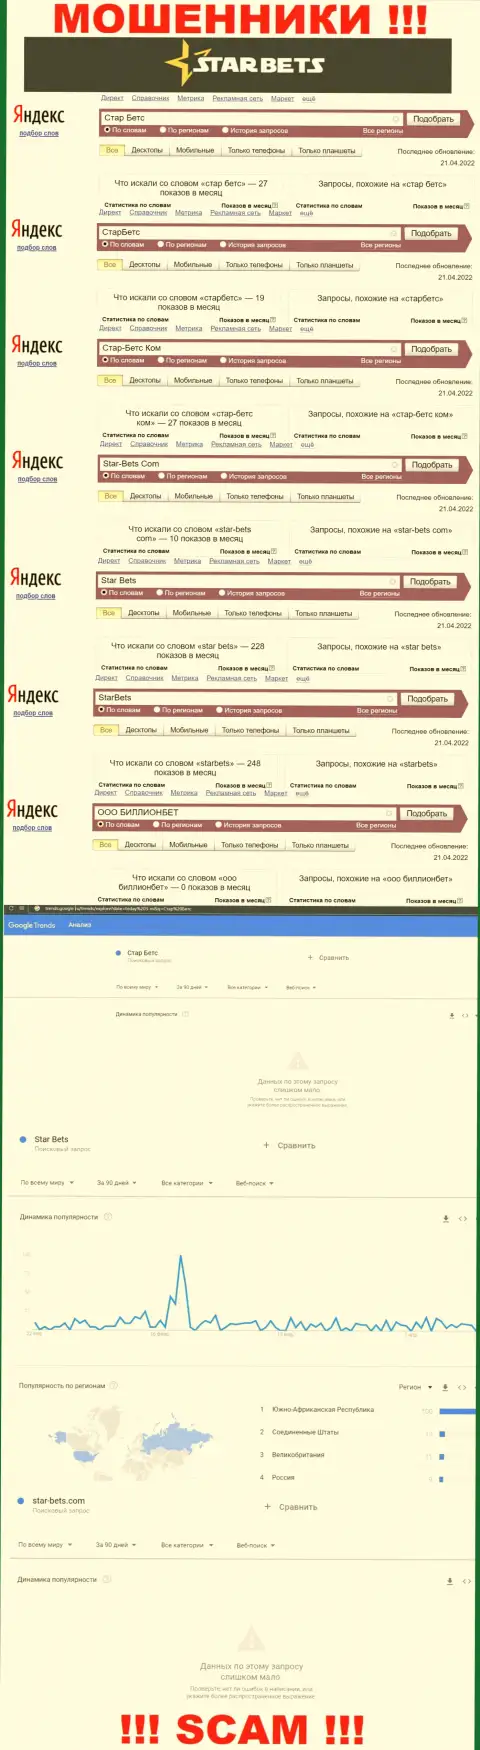 Скриншот результатов online-запросов по преступно действующей конторе СтарБетс